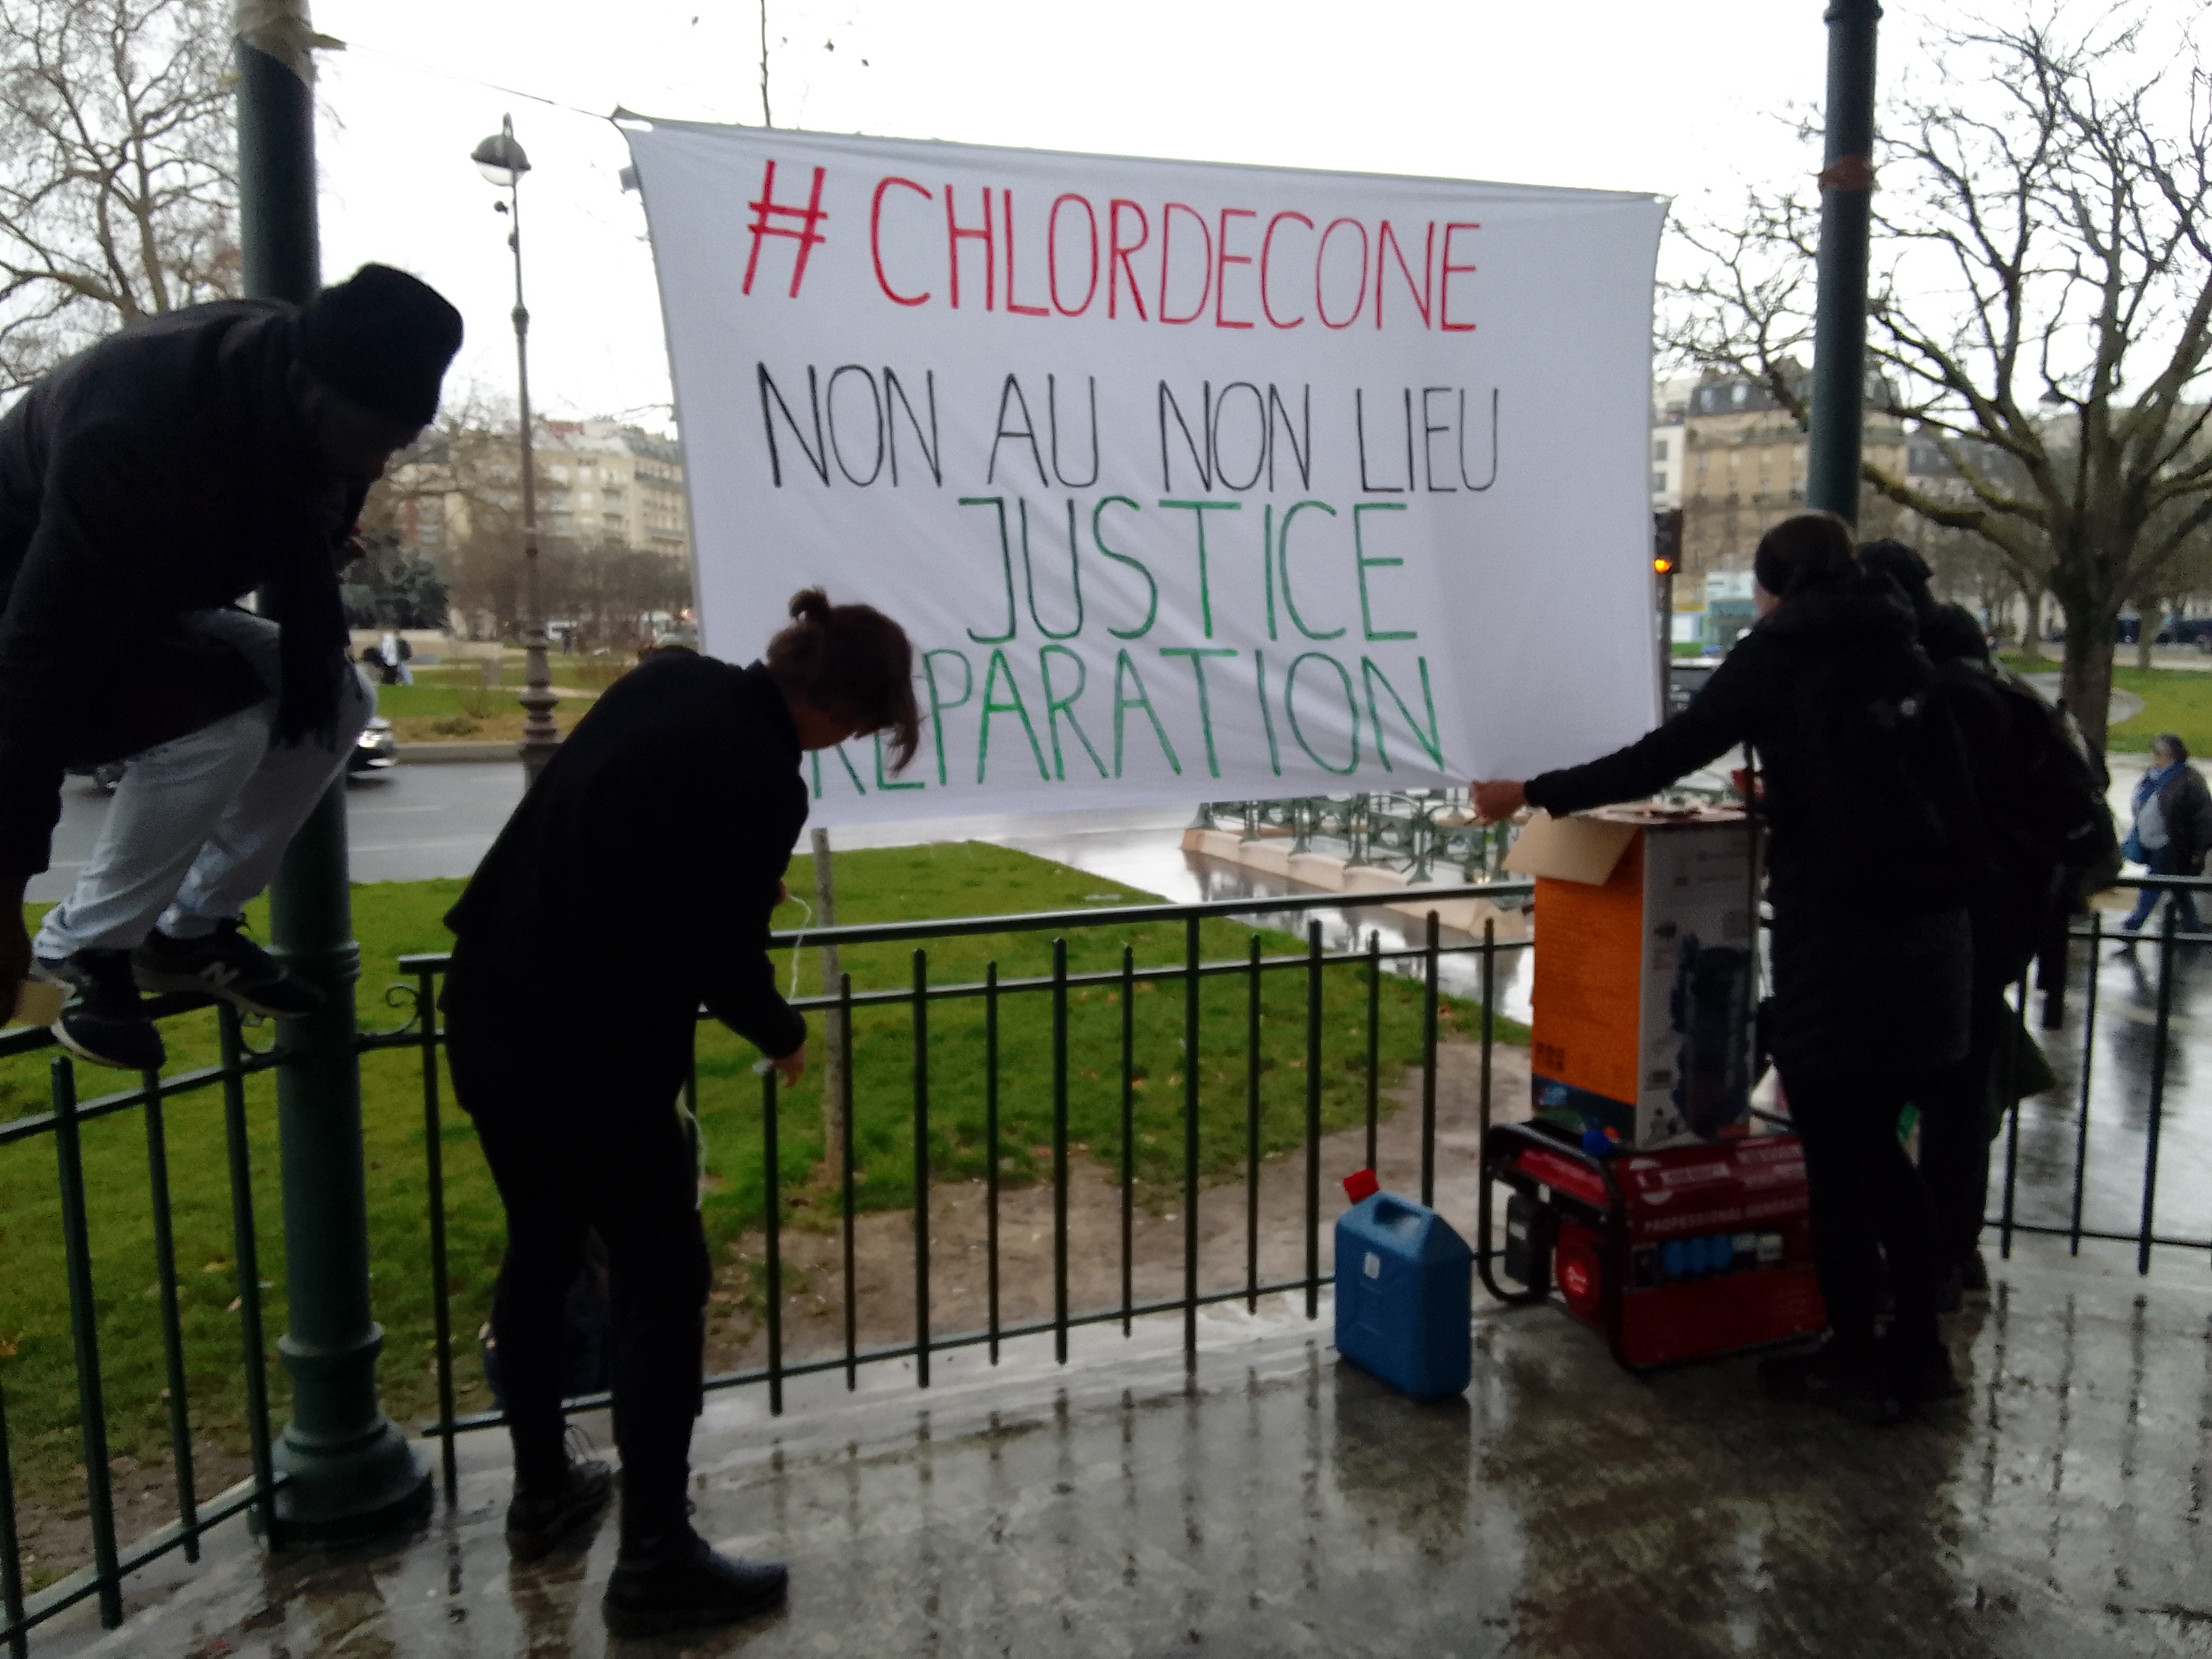     Mobilisation à Paris contre le non-lieu dans l’affaire de l’empoisonnement au chlordécone

